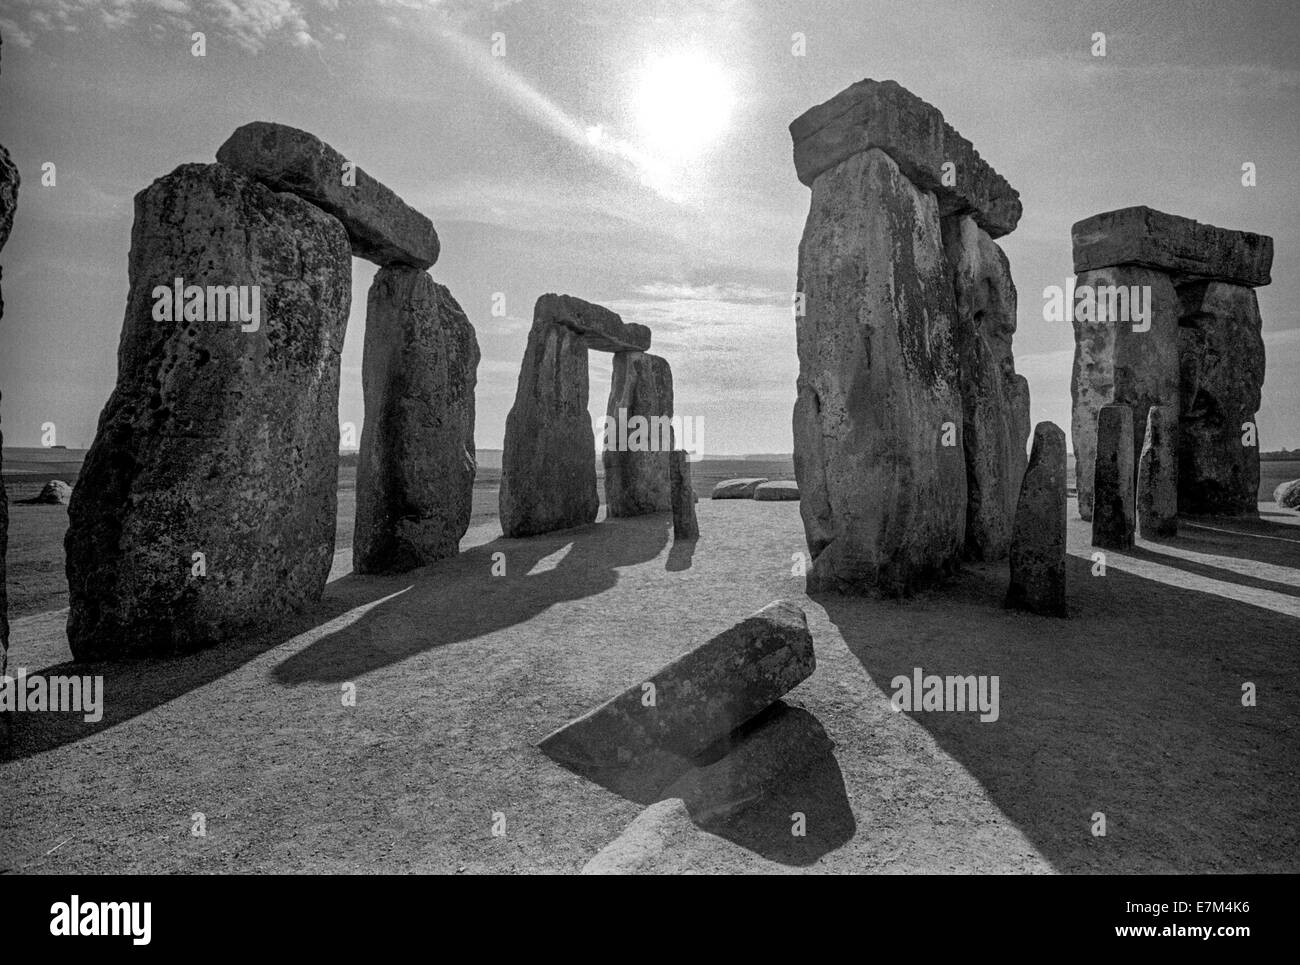 Nel tardo pomeriggio somma risplende attraverso il sito di Stonehenge, un monumento preistorico situato nel Wiltshire, Inghilterra, su Salisbury Plain. Nota lunghe ombre. Foto Stock